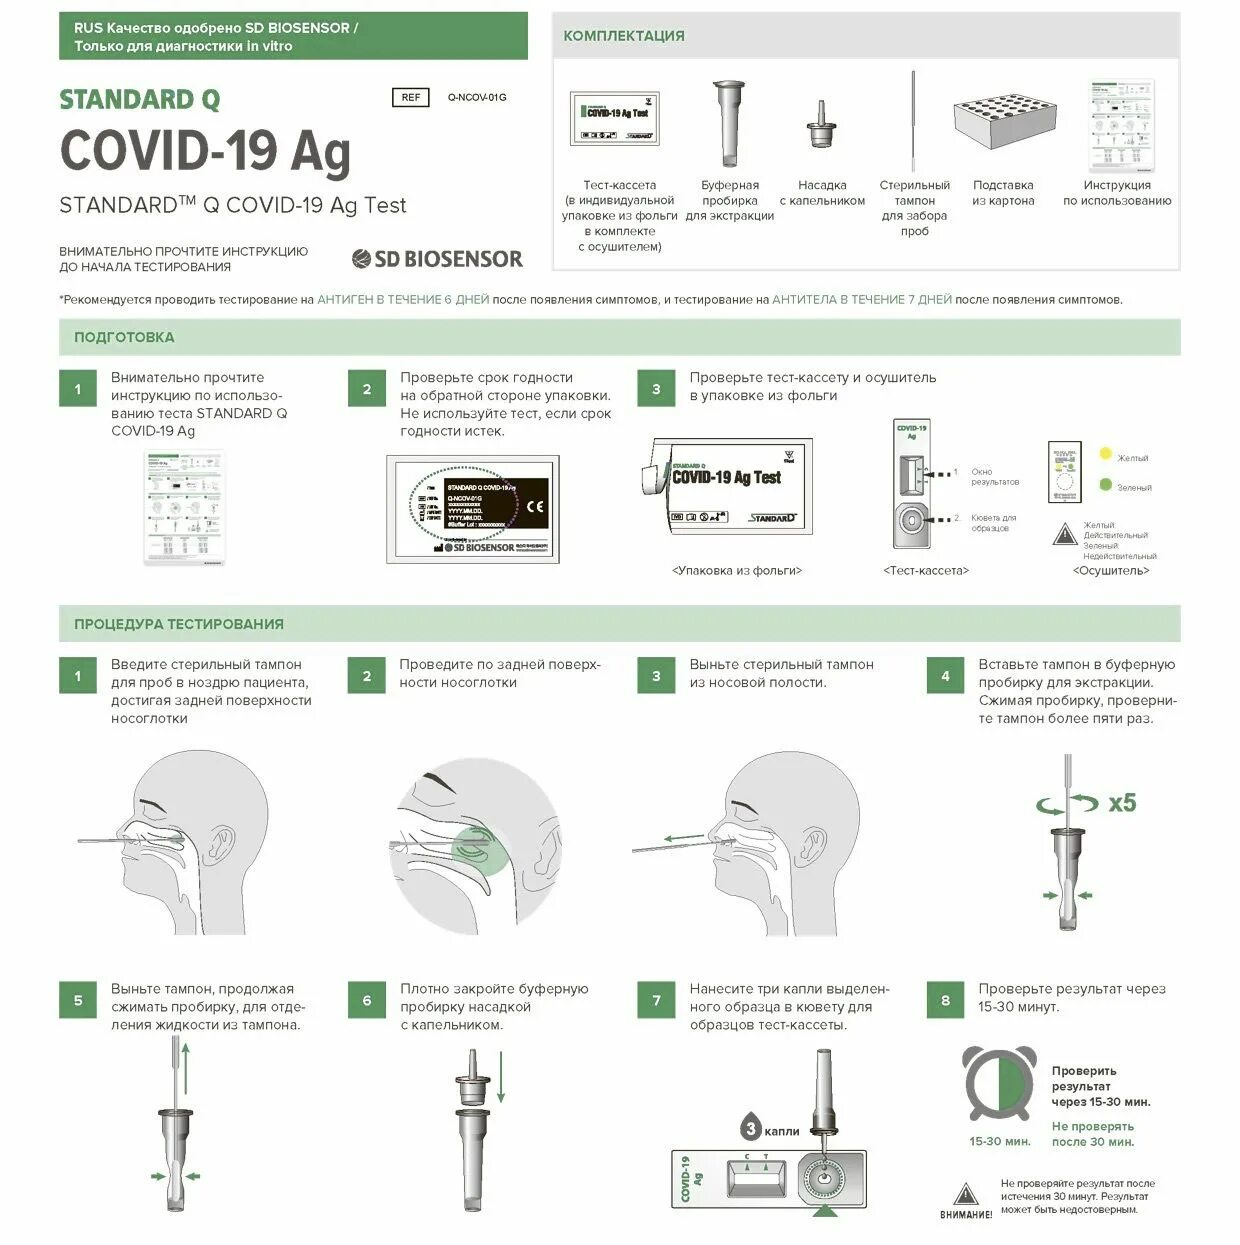 Точность экспресс тестов. Инструкция по экспресс тесту на ковид Covid-19. Тест на ковид Covid-19 AG инструкция. Показания экспресс теста на ковид19. Экспресс-тест на коронавирус Covid-19.